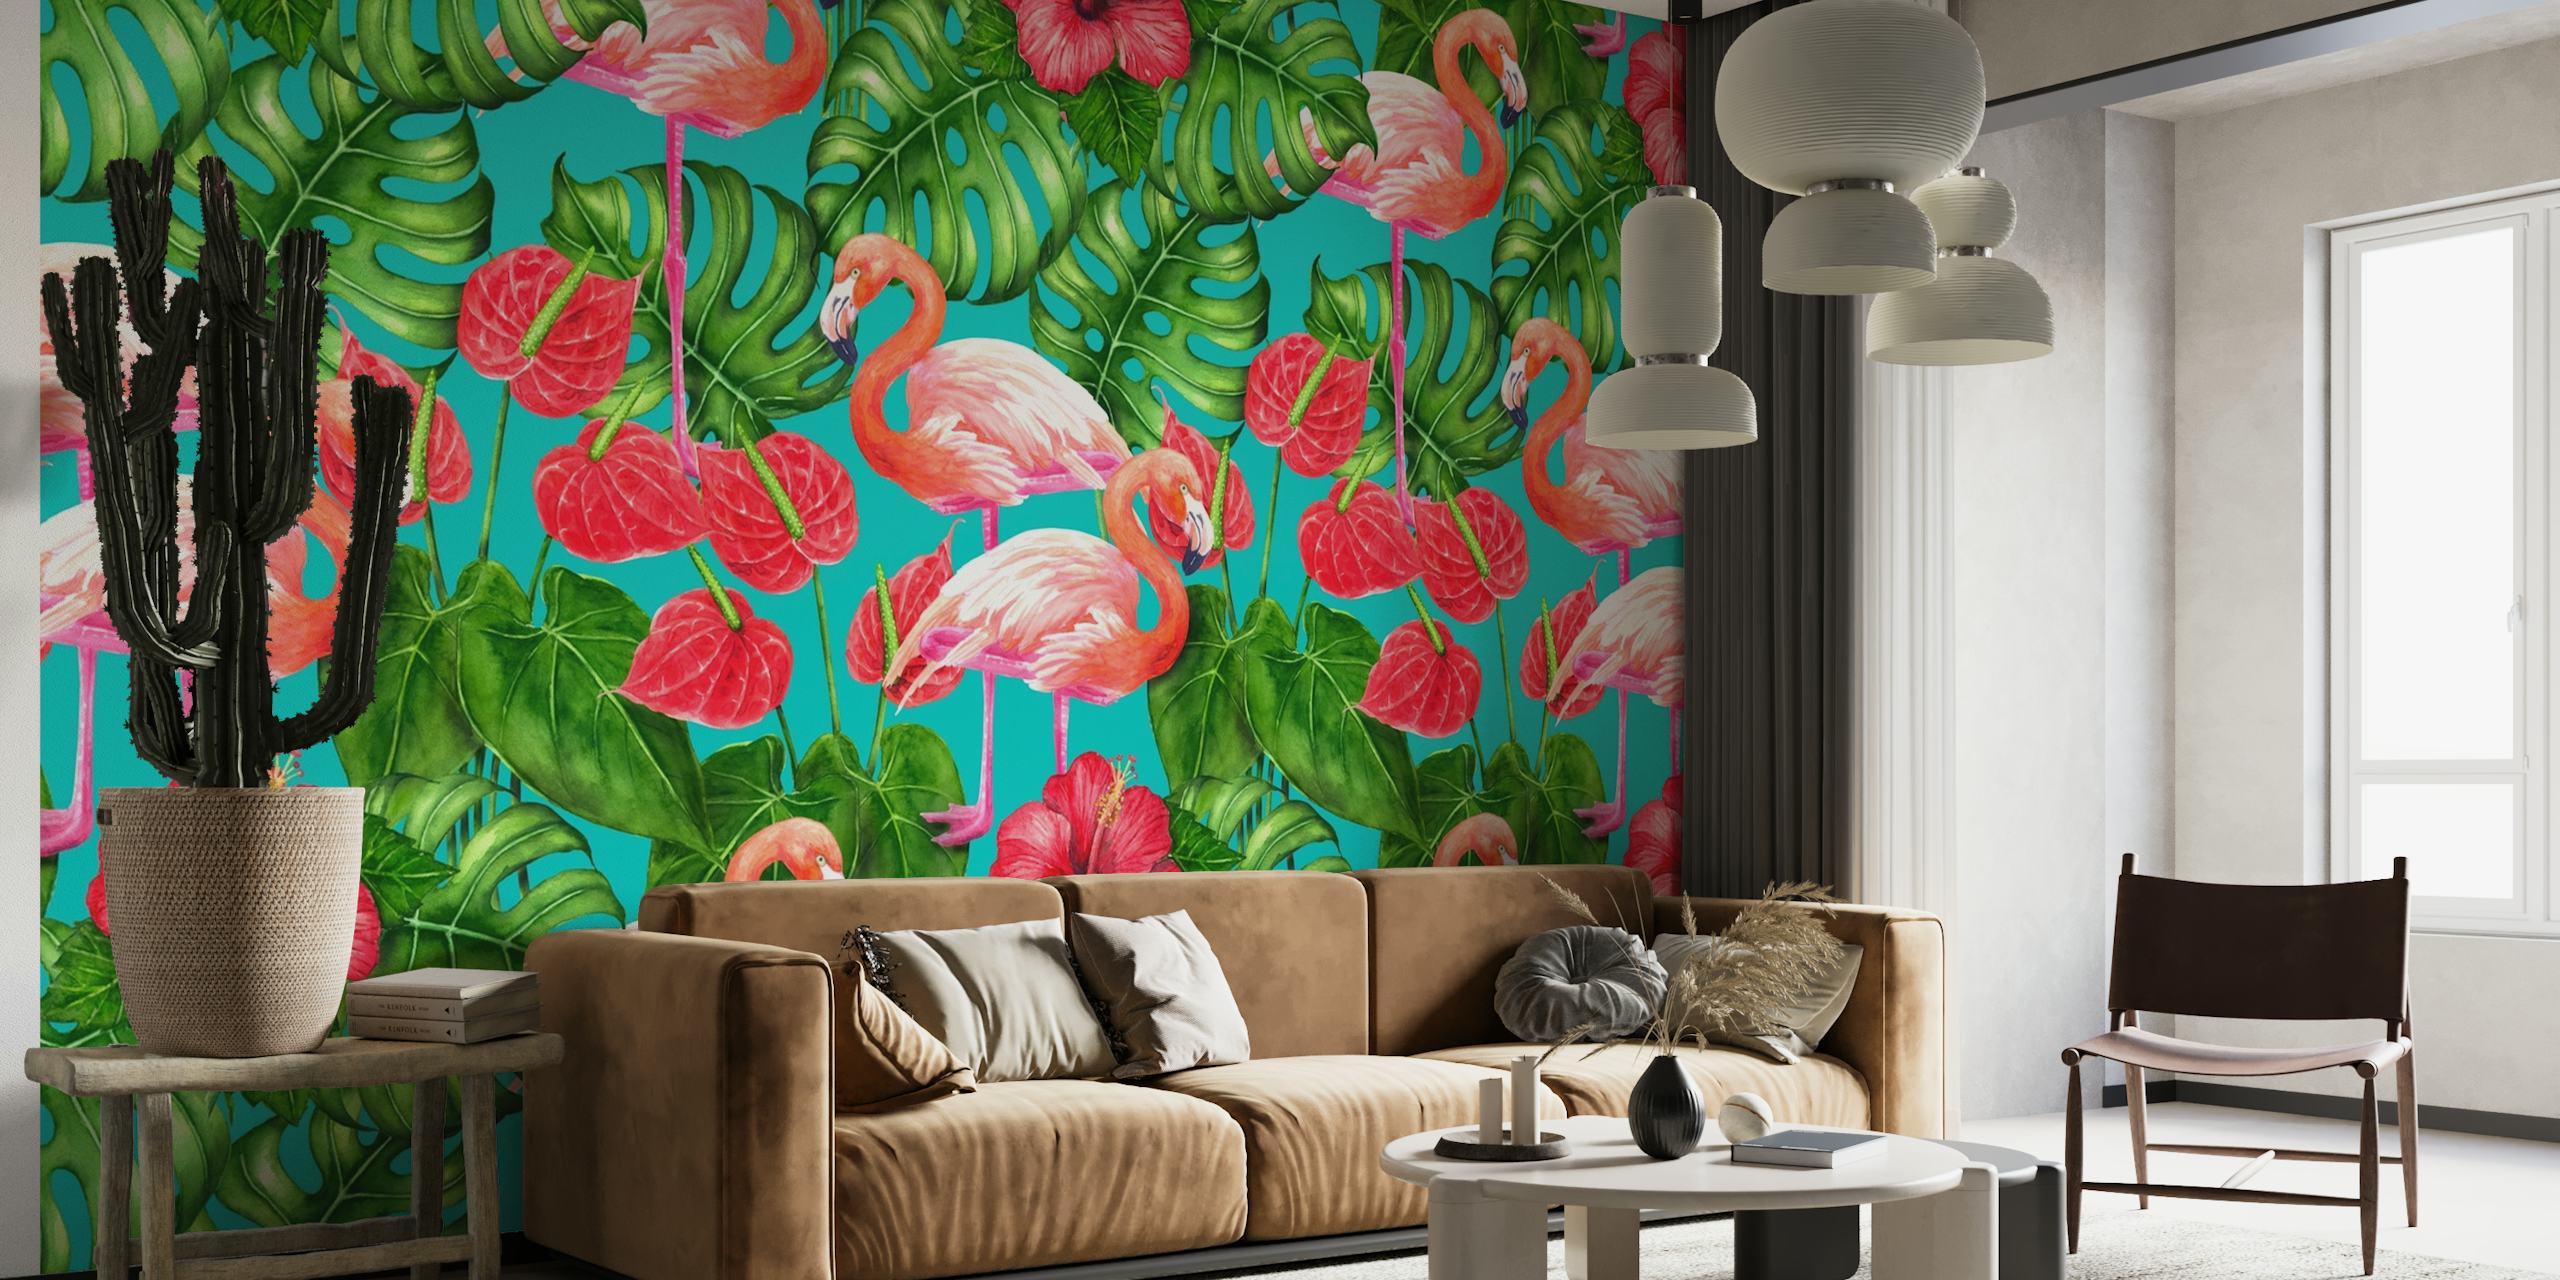 Flamingo and tropical garden wallpaper